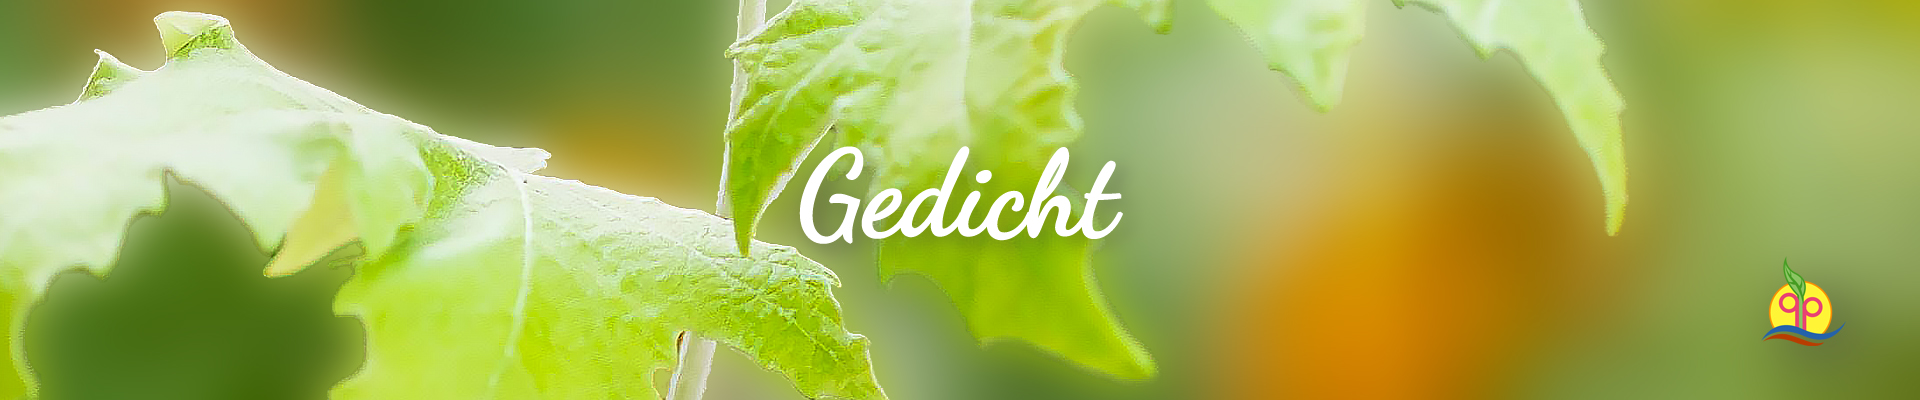 schenkdirgesundheit.com - ebuch P01 - schenkdirgesundheit- geidcht_v8A-3-D5